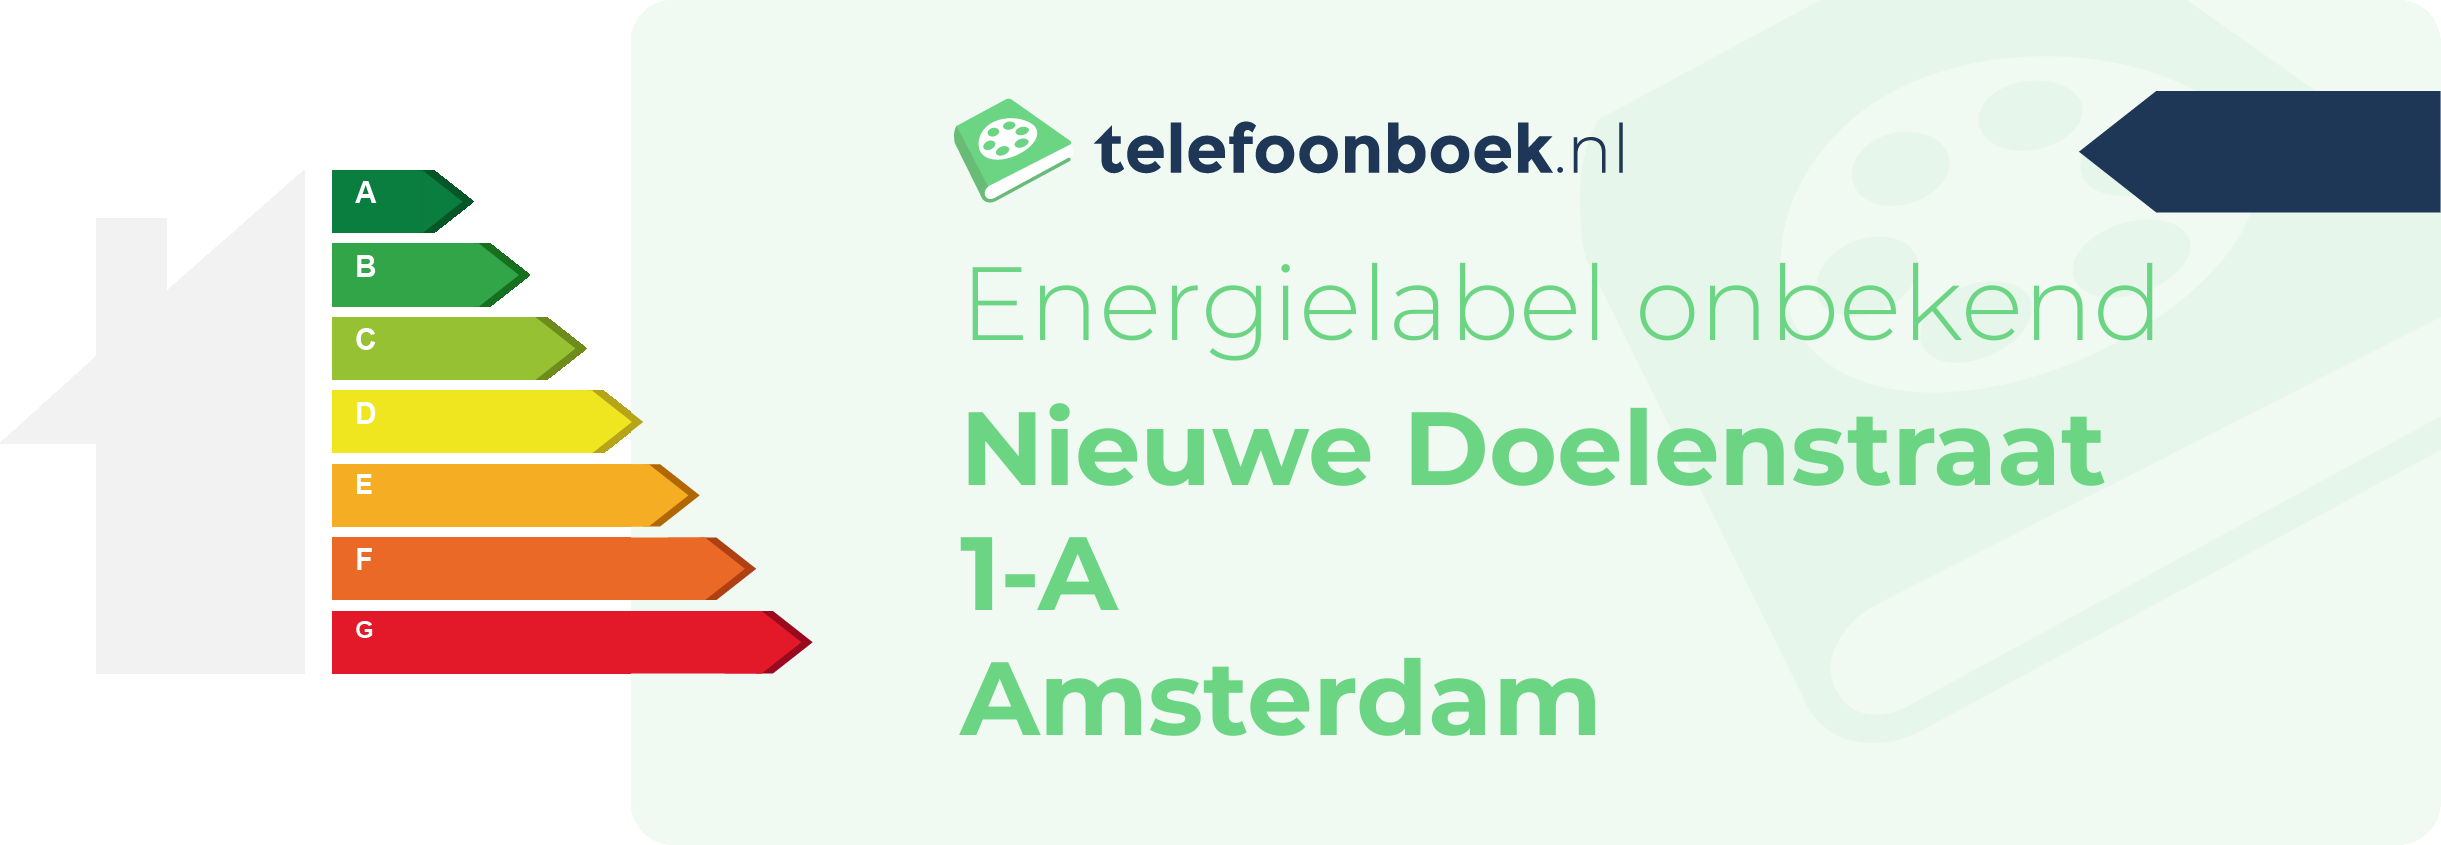 Energielabel Nieuwe Doelenstraat 1-A Amsterdam